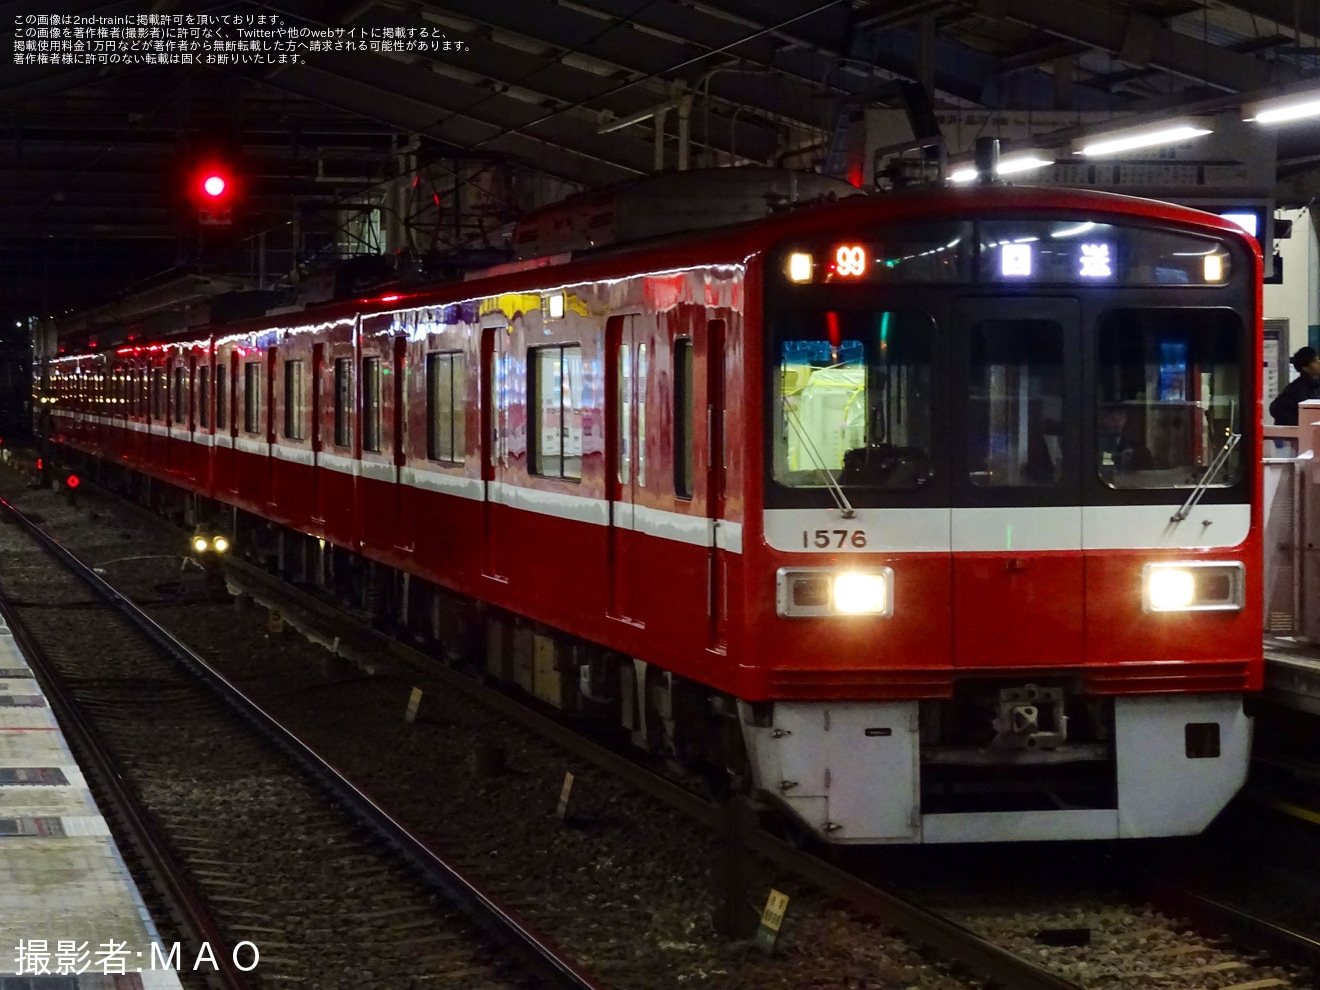 【京急】梅屋敷駅1番線へのホームドア輸送が1573編成を使用して実施の拡大写真